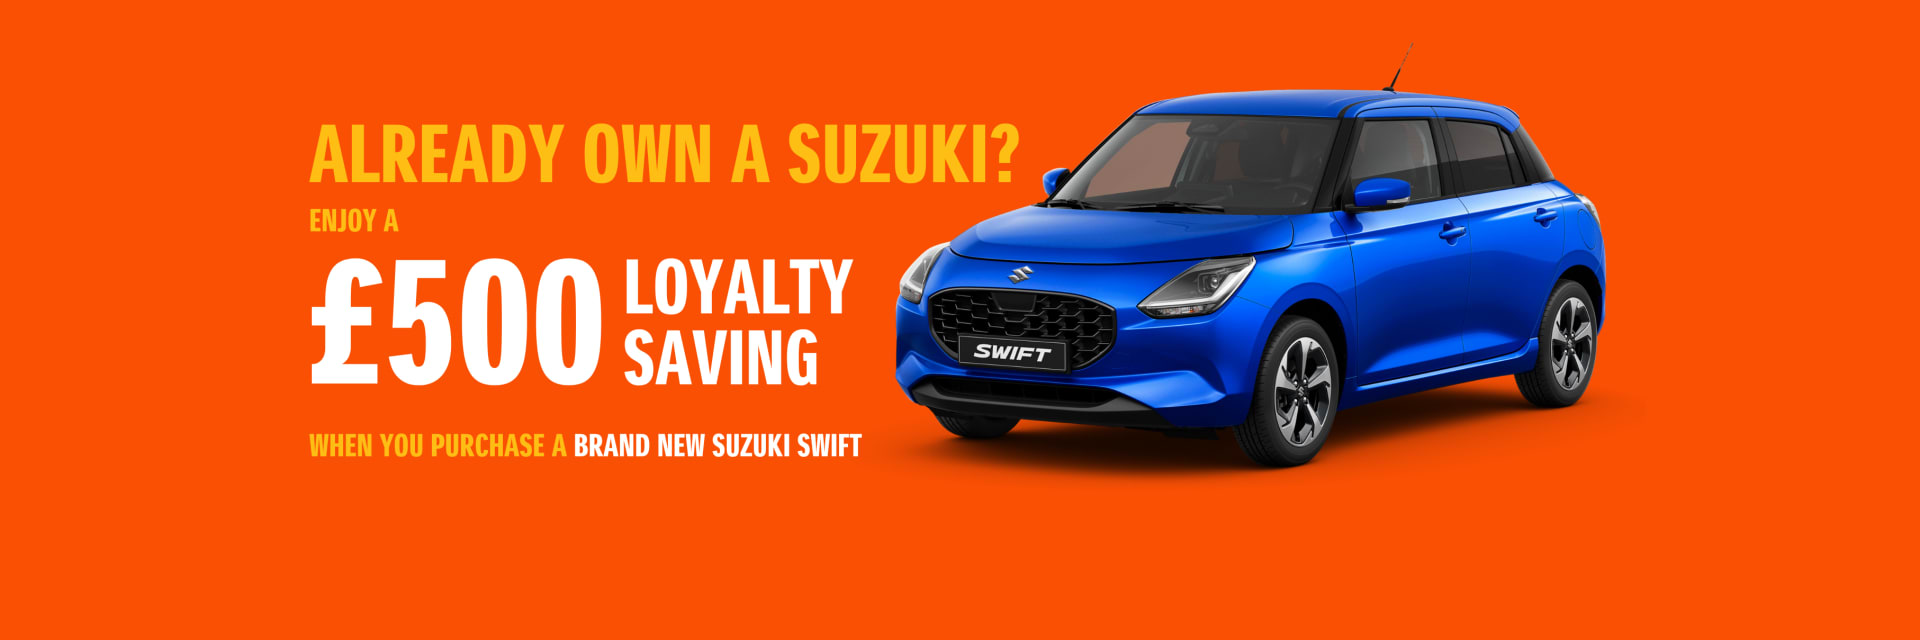 Suzuki Swift Loyalty Offer